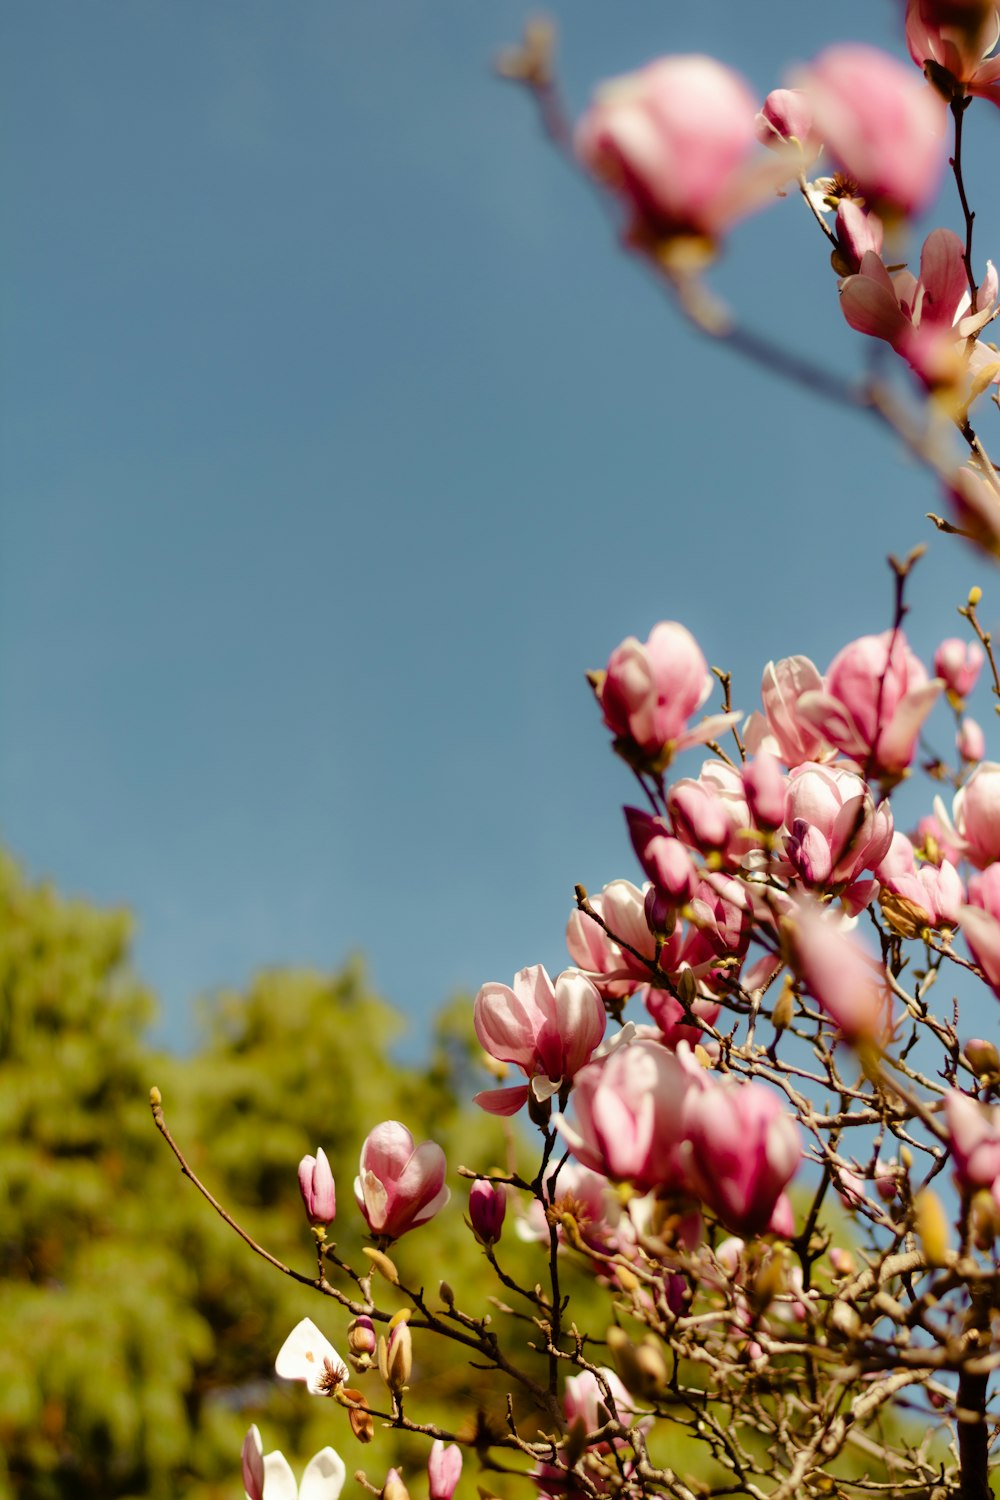 Boccioli di fiori rosa in lente tilt shift foto – Fiore Immagine gratuita  su Unsplash